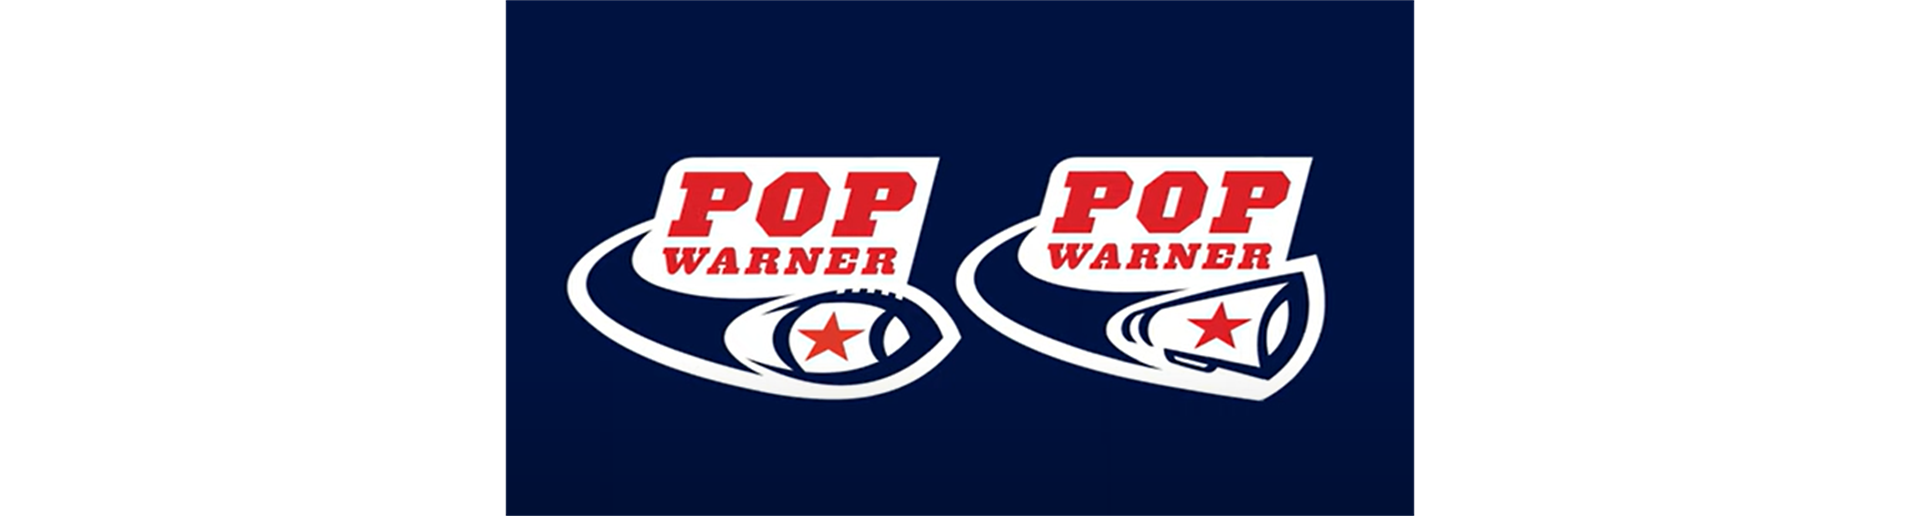 Pop Warner Fan Behavior: Be Better PSA